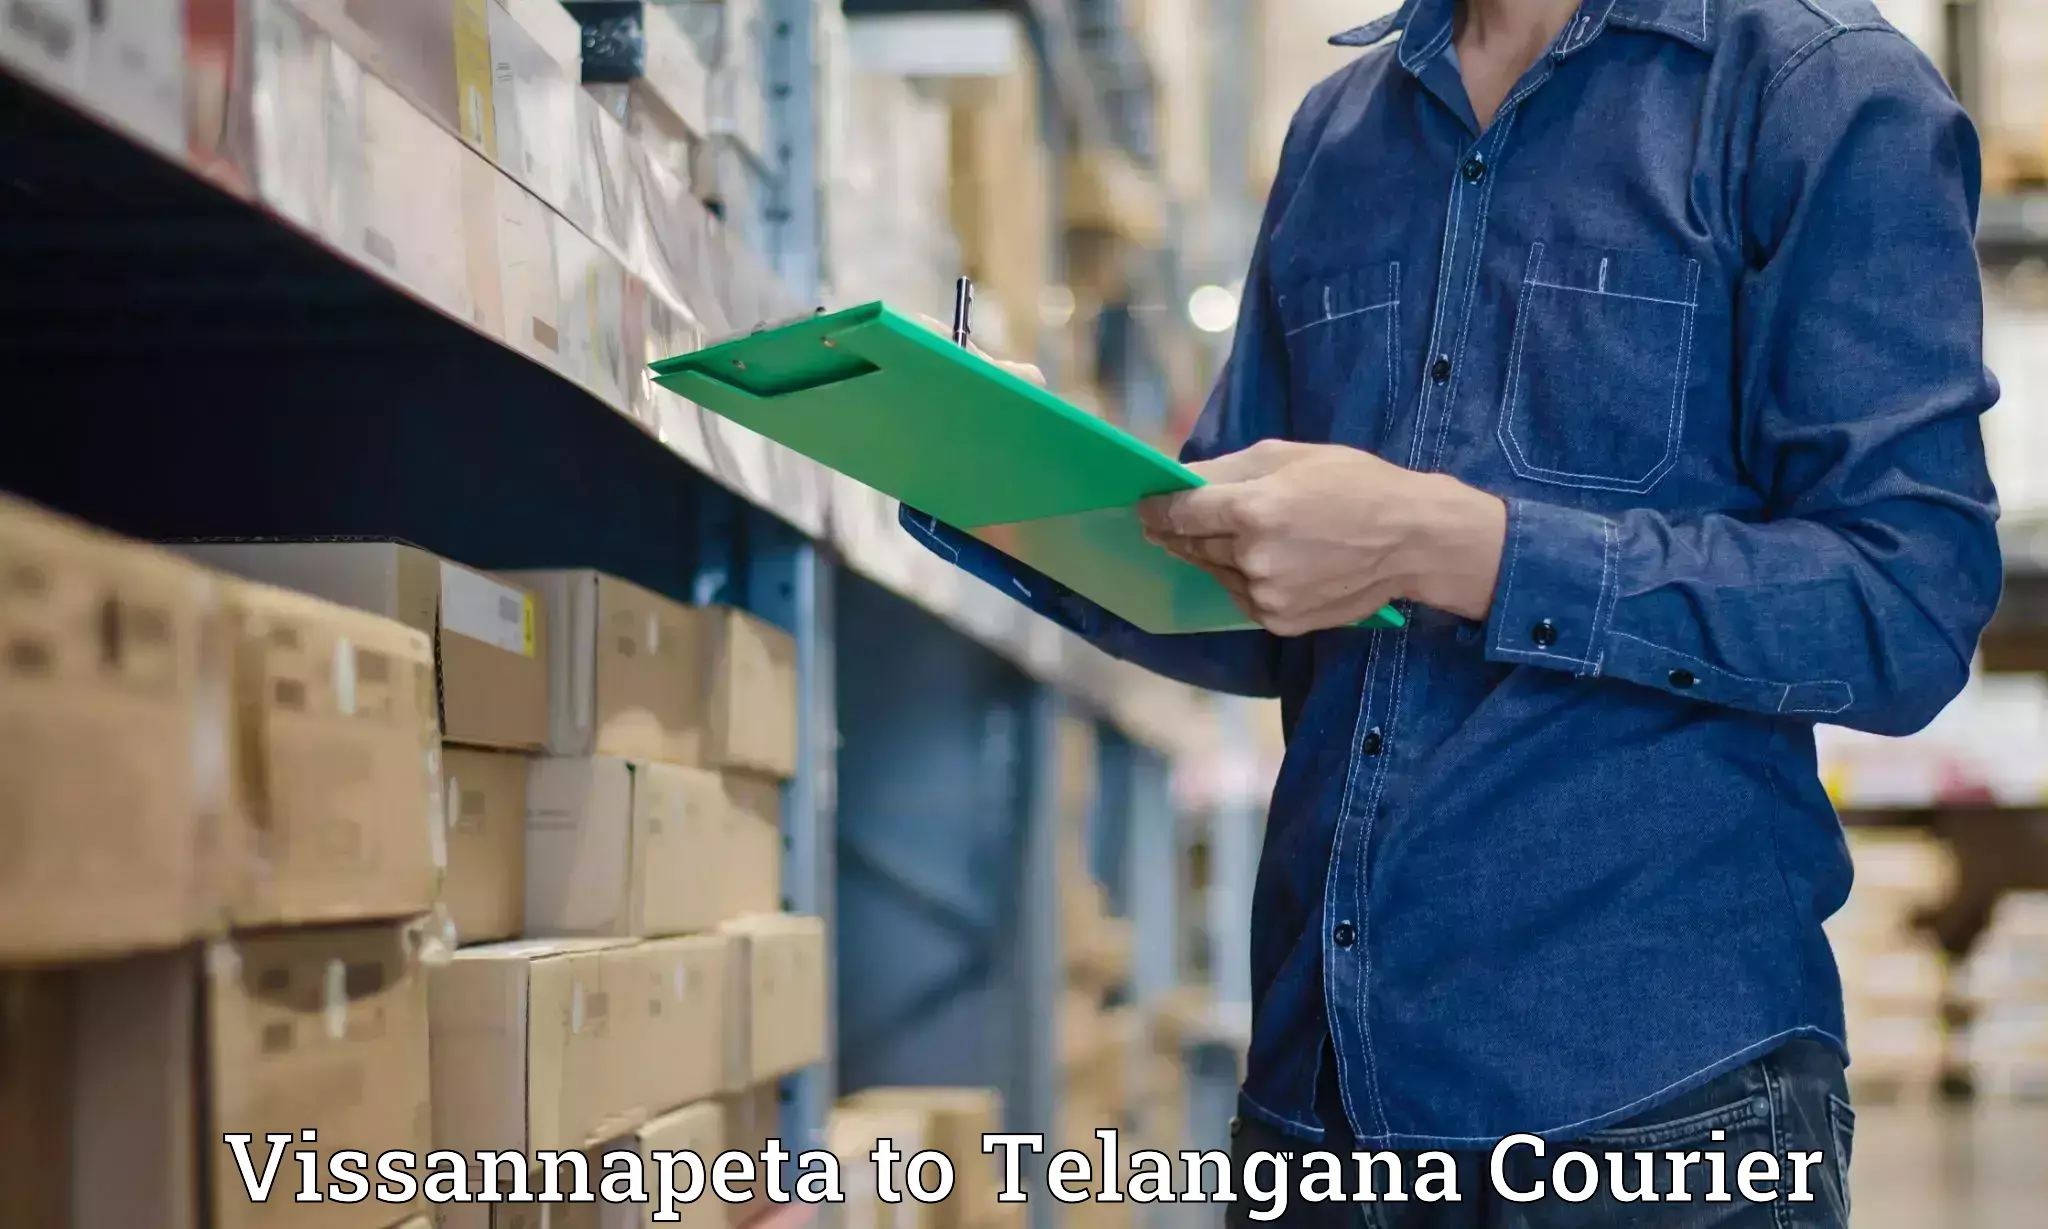 Luggage shipment processing Vissannapeta to Telangana